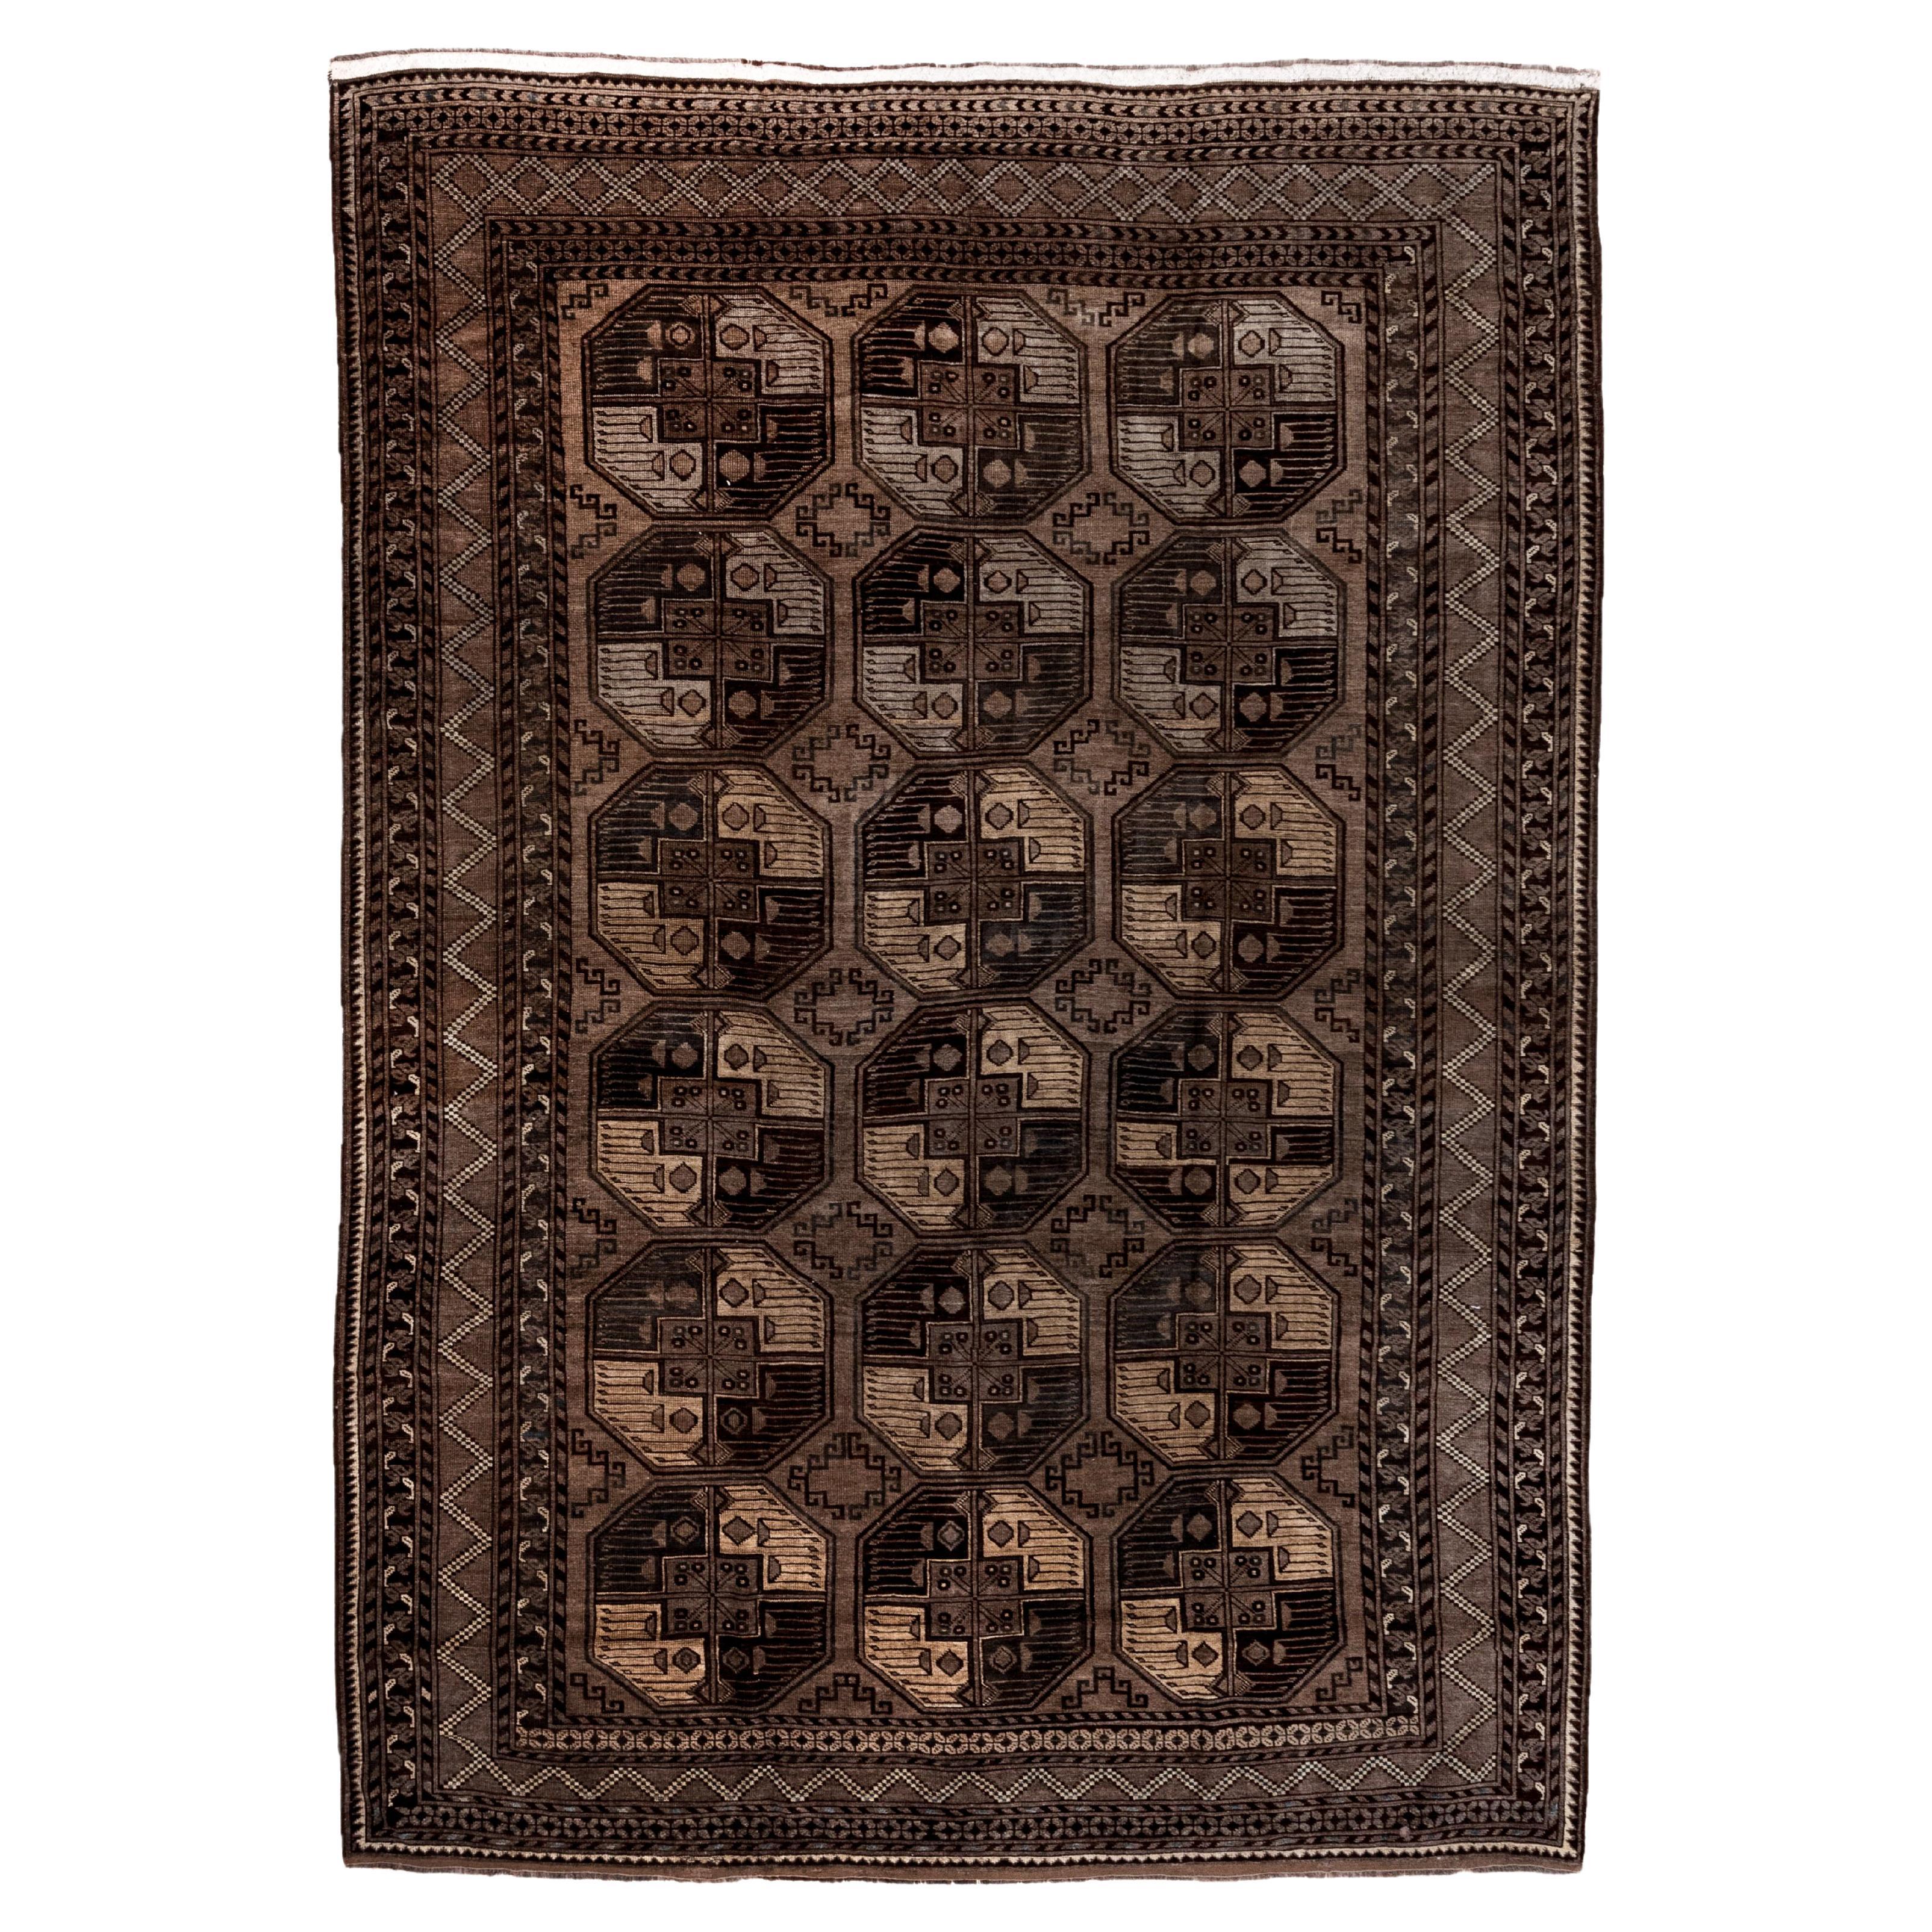 Antiker afghanischer Ersari-Teppich, turkmenisches Muster, ca. 1930er Jahre, Braun- und Goldtöne